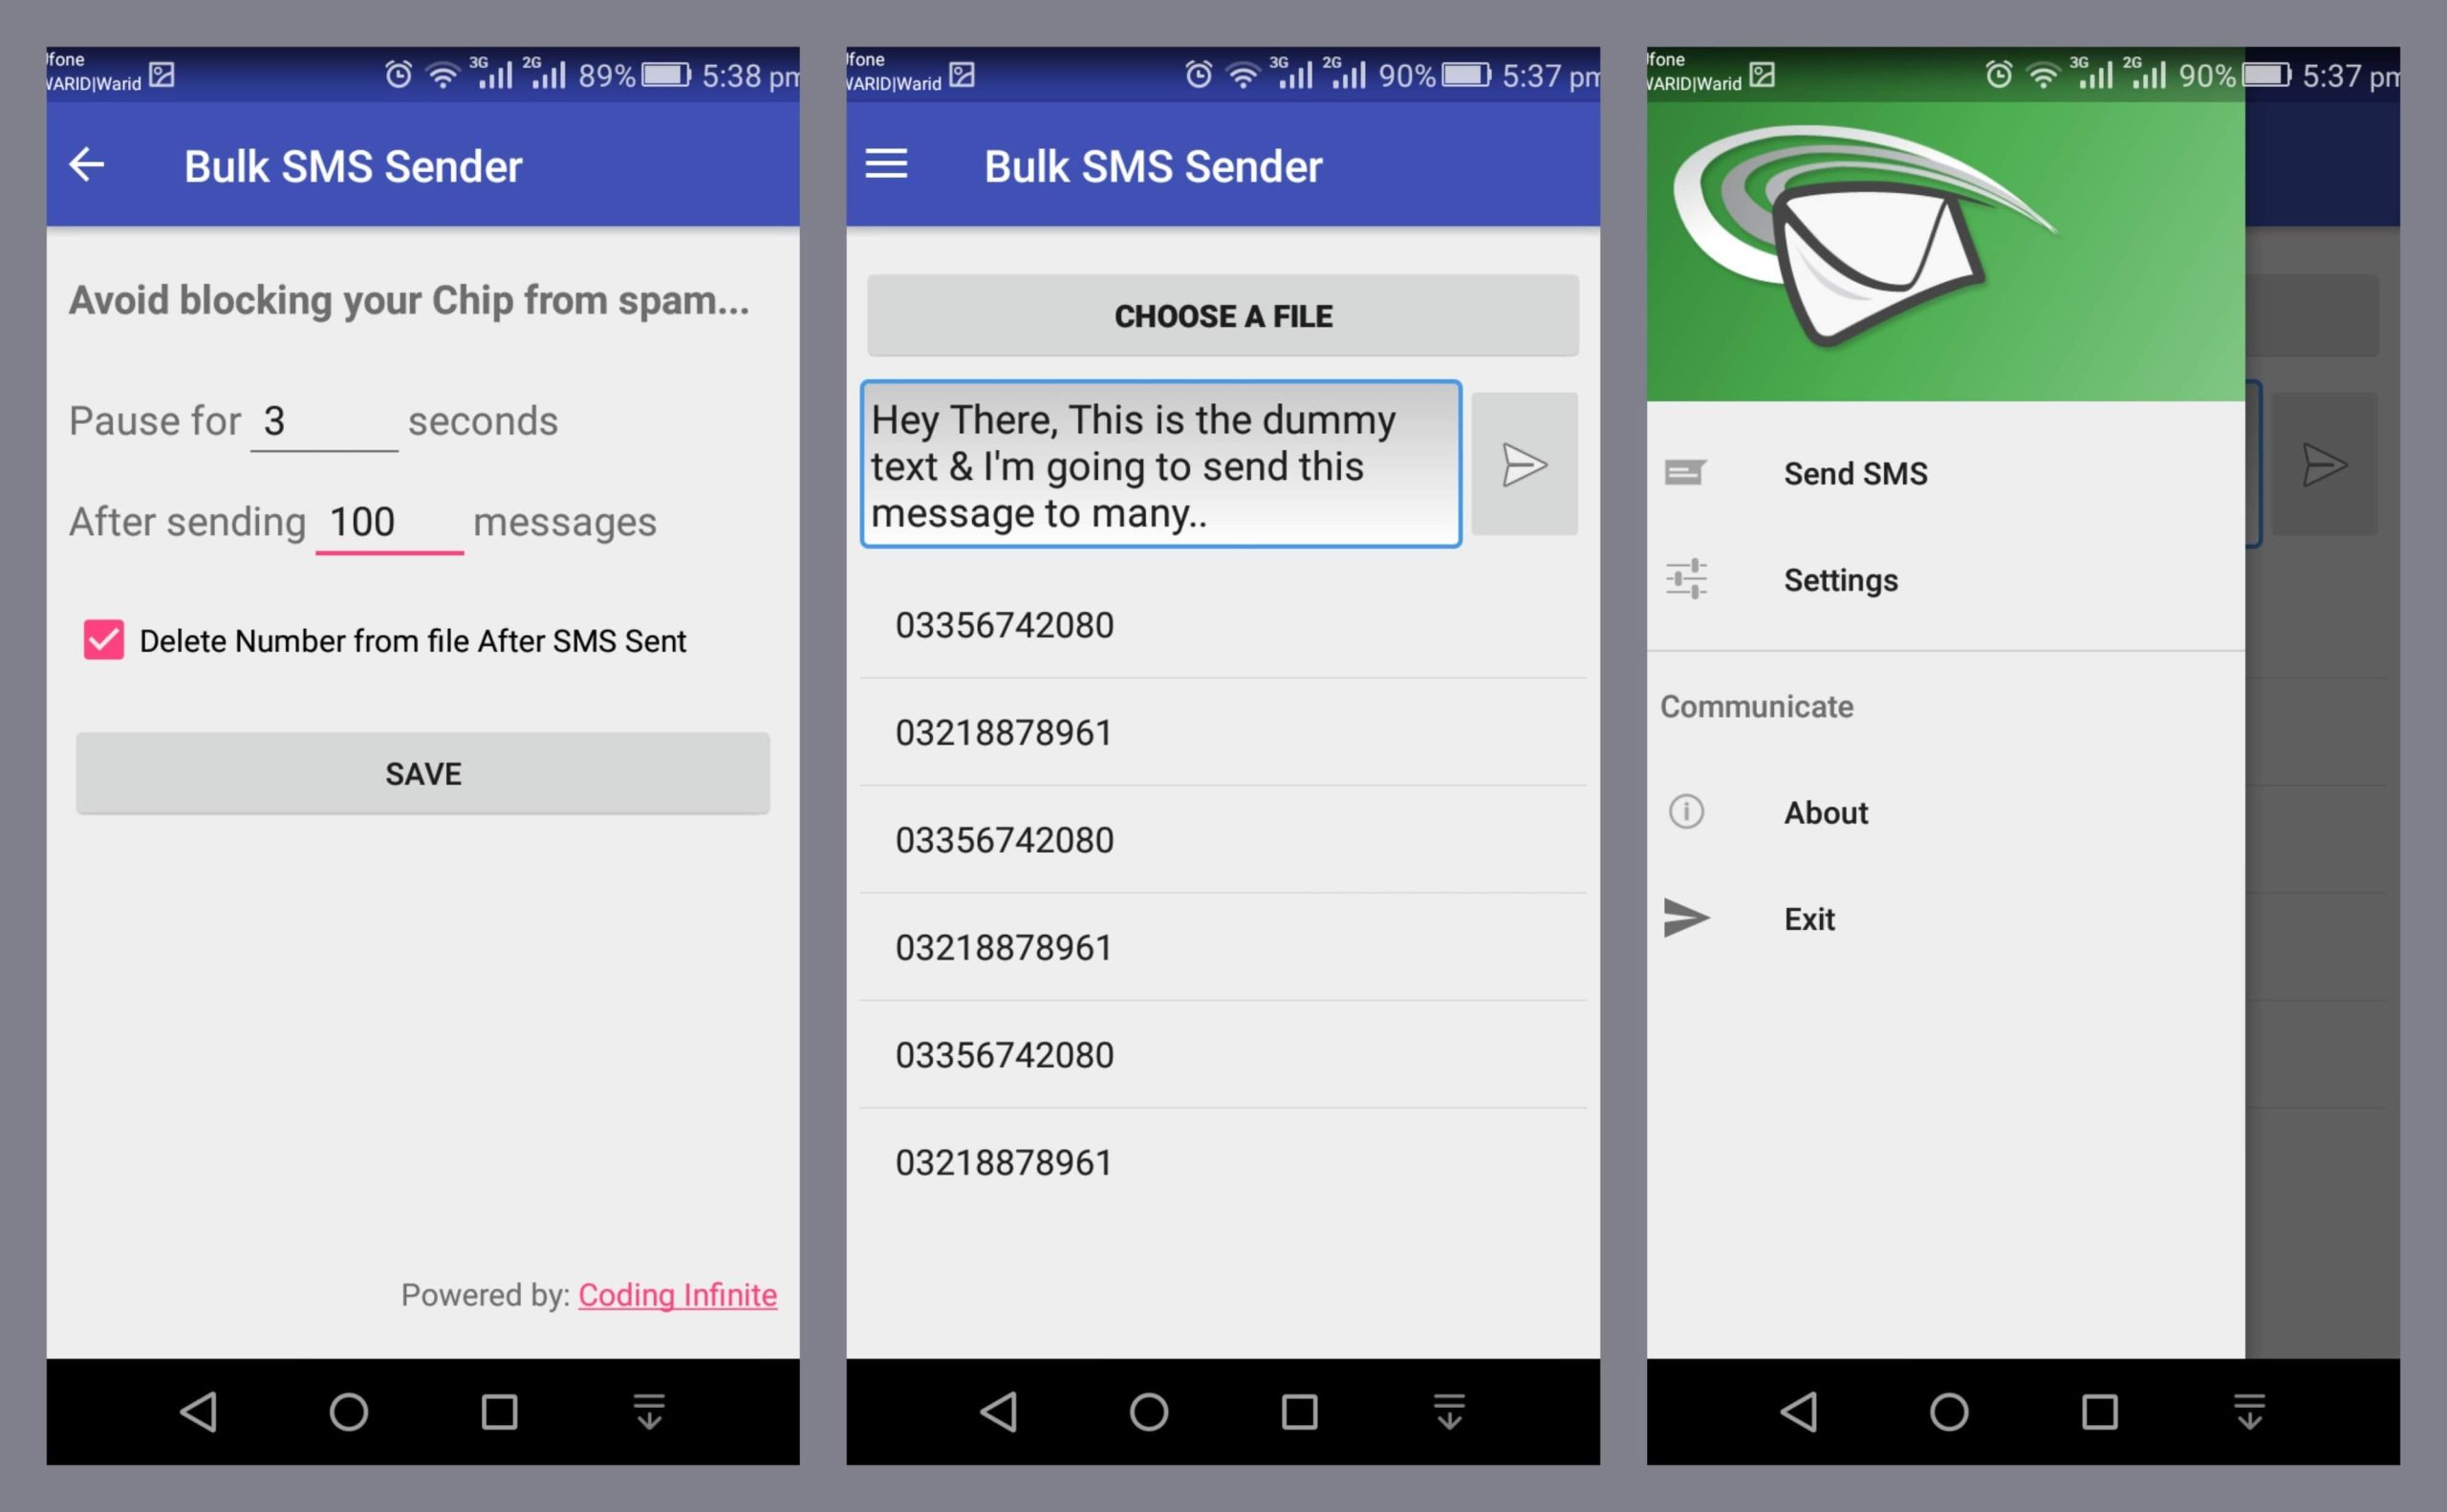 Android Bulk SMS Sender 10.21.3.25 Crack Free Download